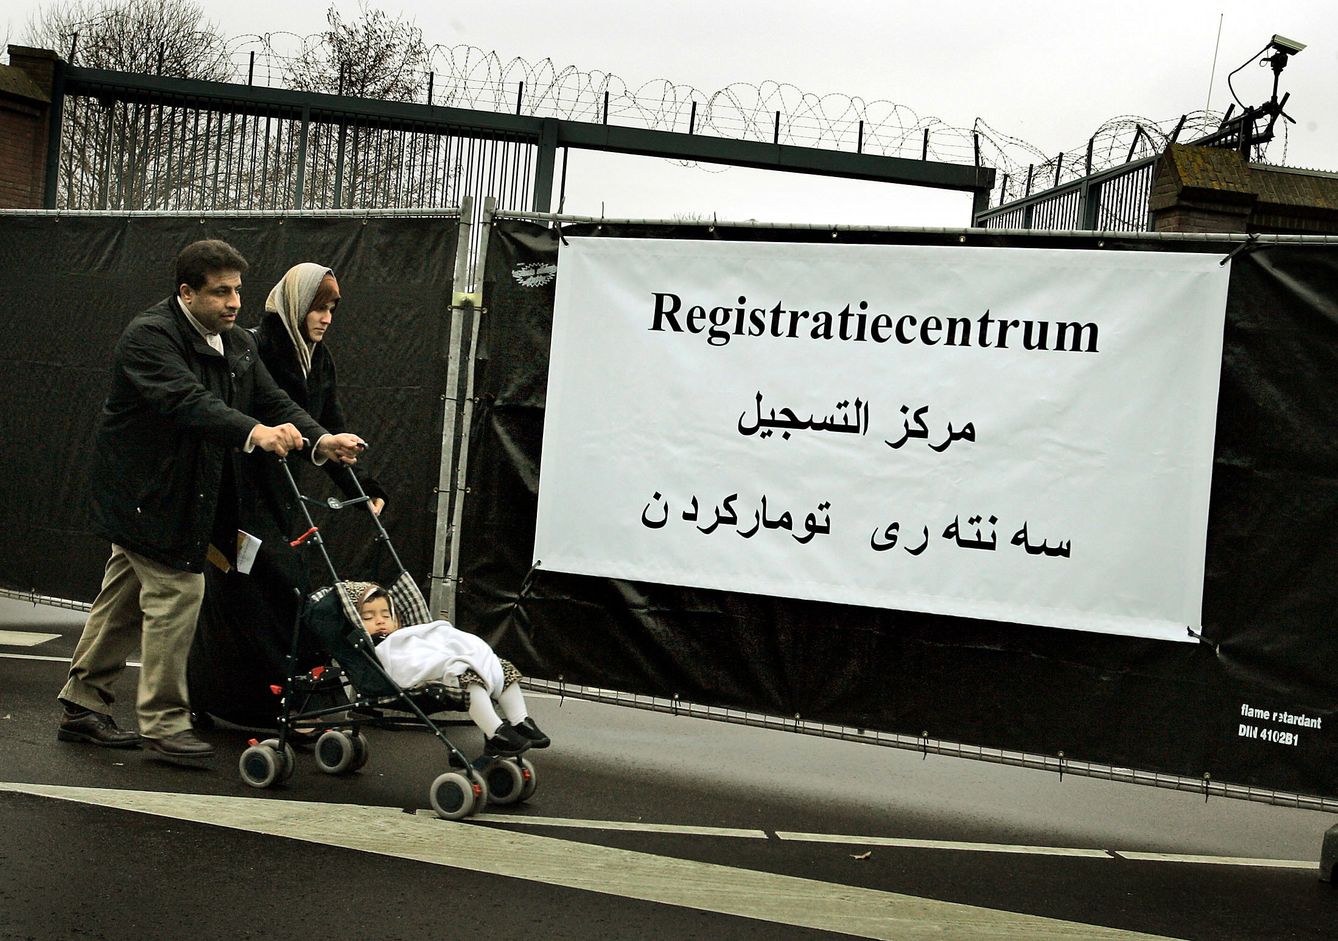 Una familia iraquí pasa ante un cartel donde pone 'Centro de registro' en una base naval de Ámsterdam. (Reuters)